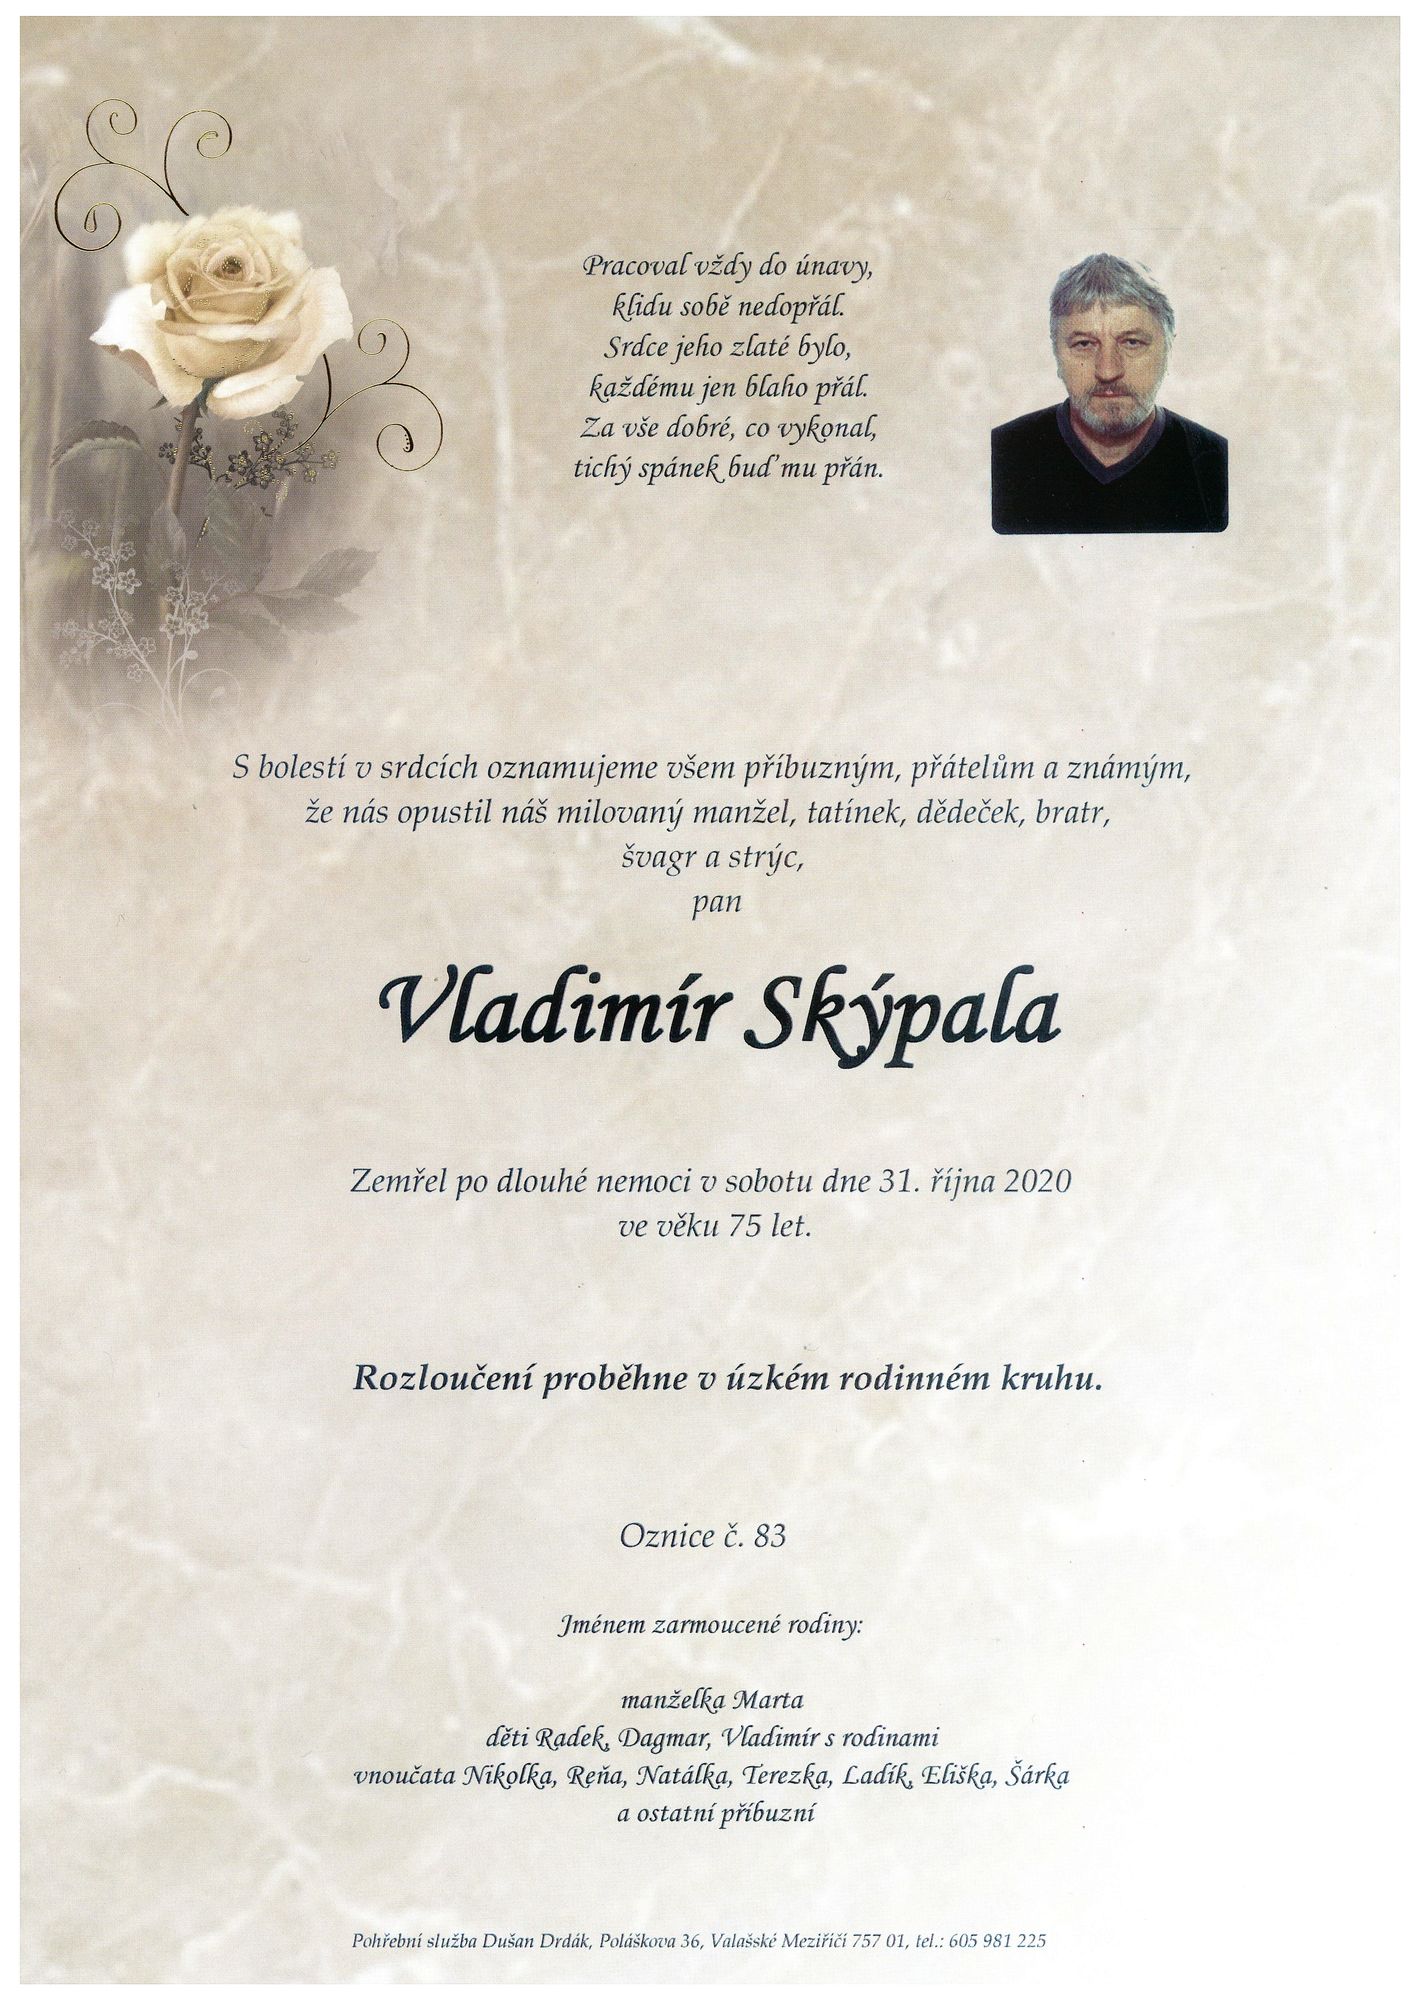 Vladimír Skýpala